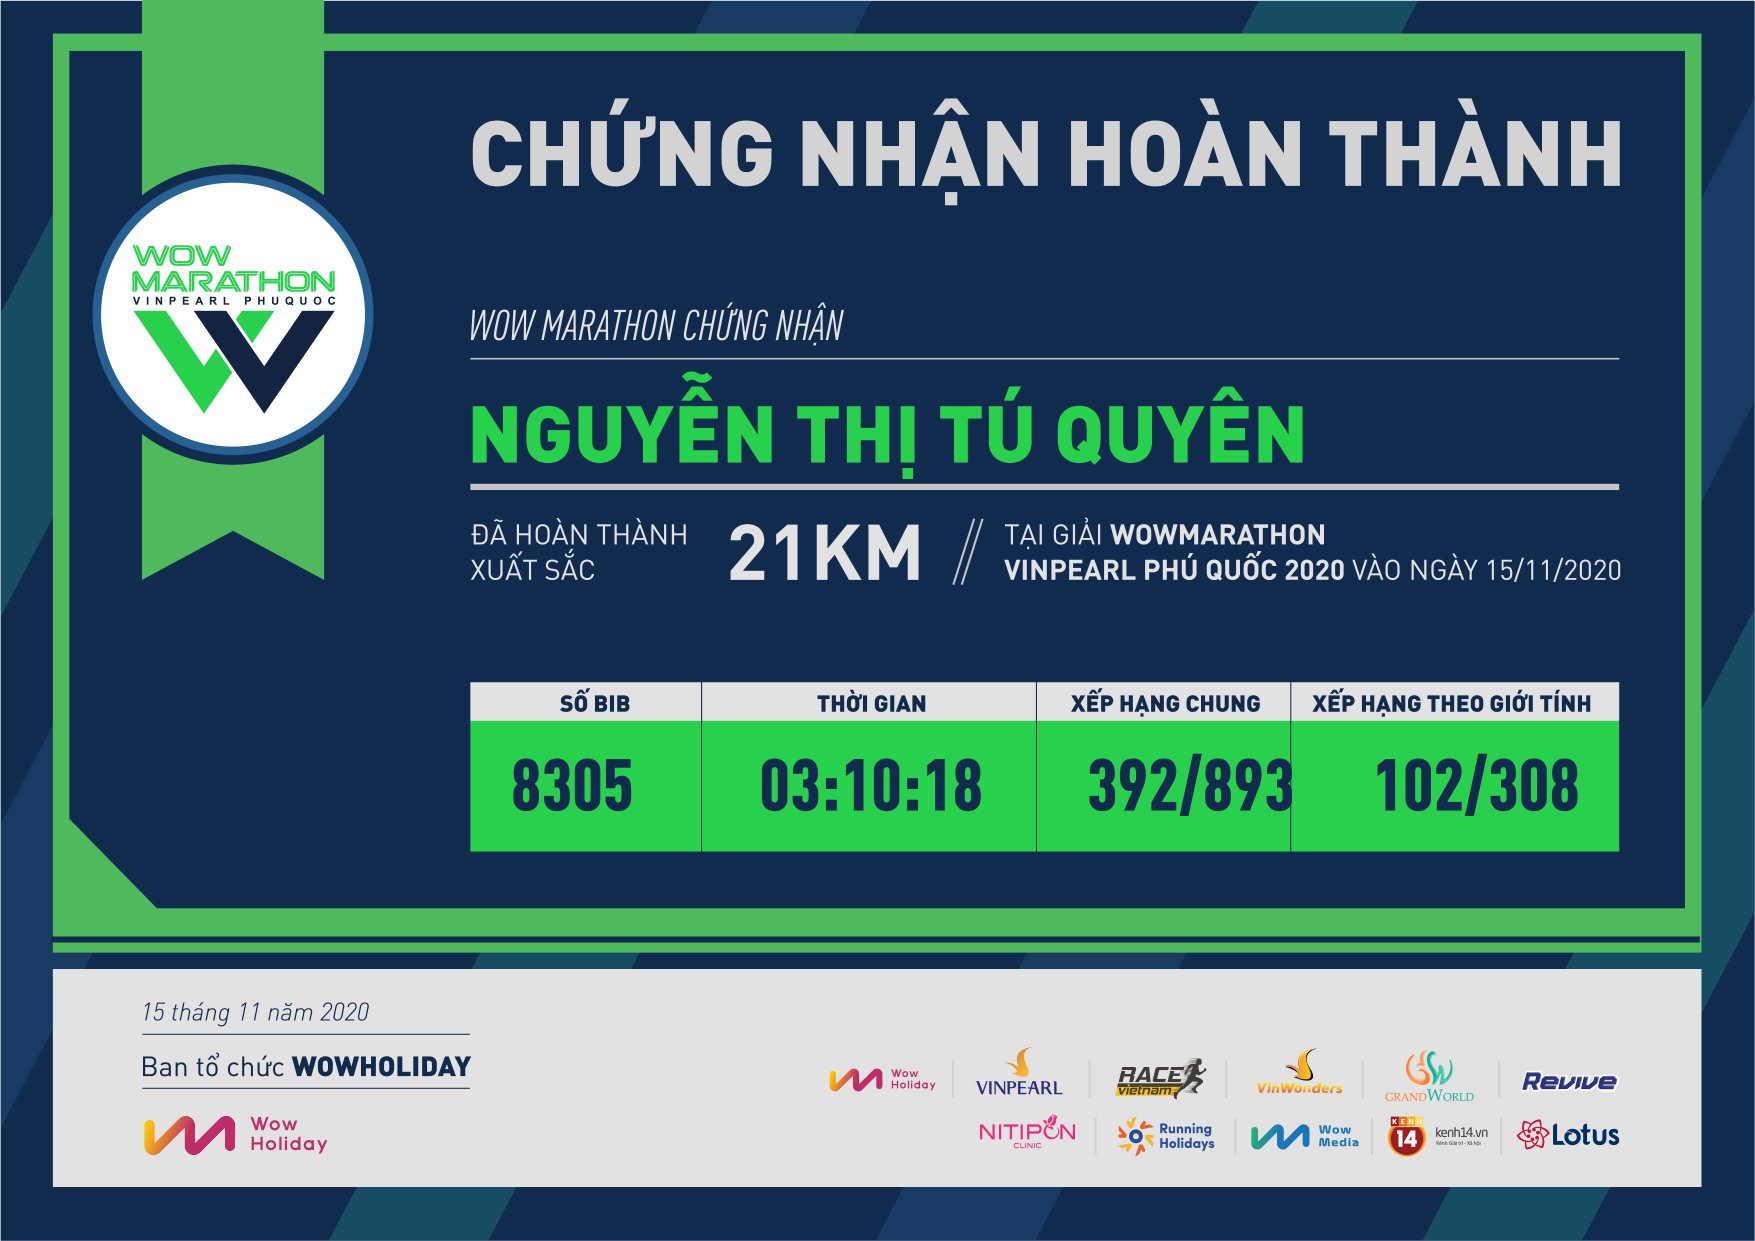 8305 - Nguyễn Thị Tú Quyên